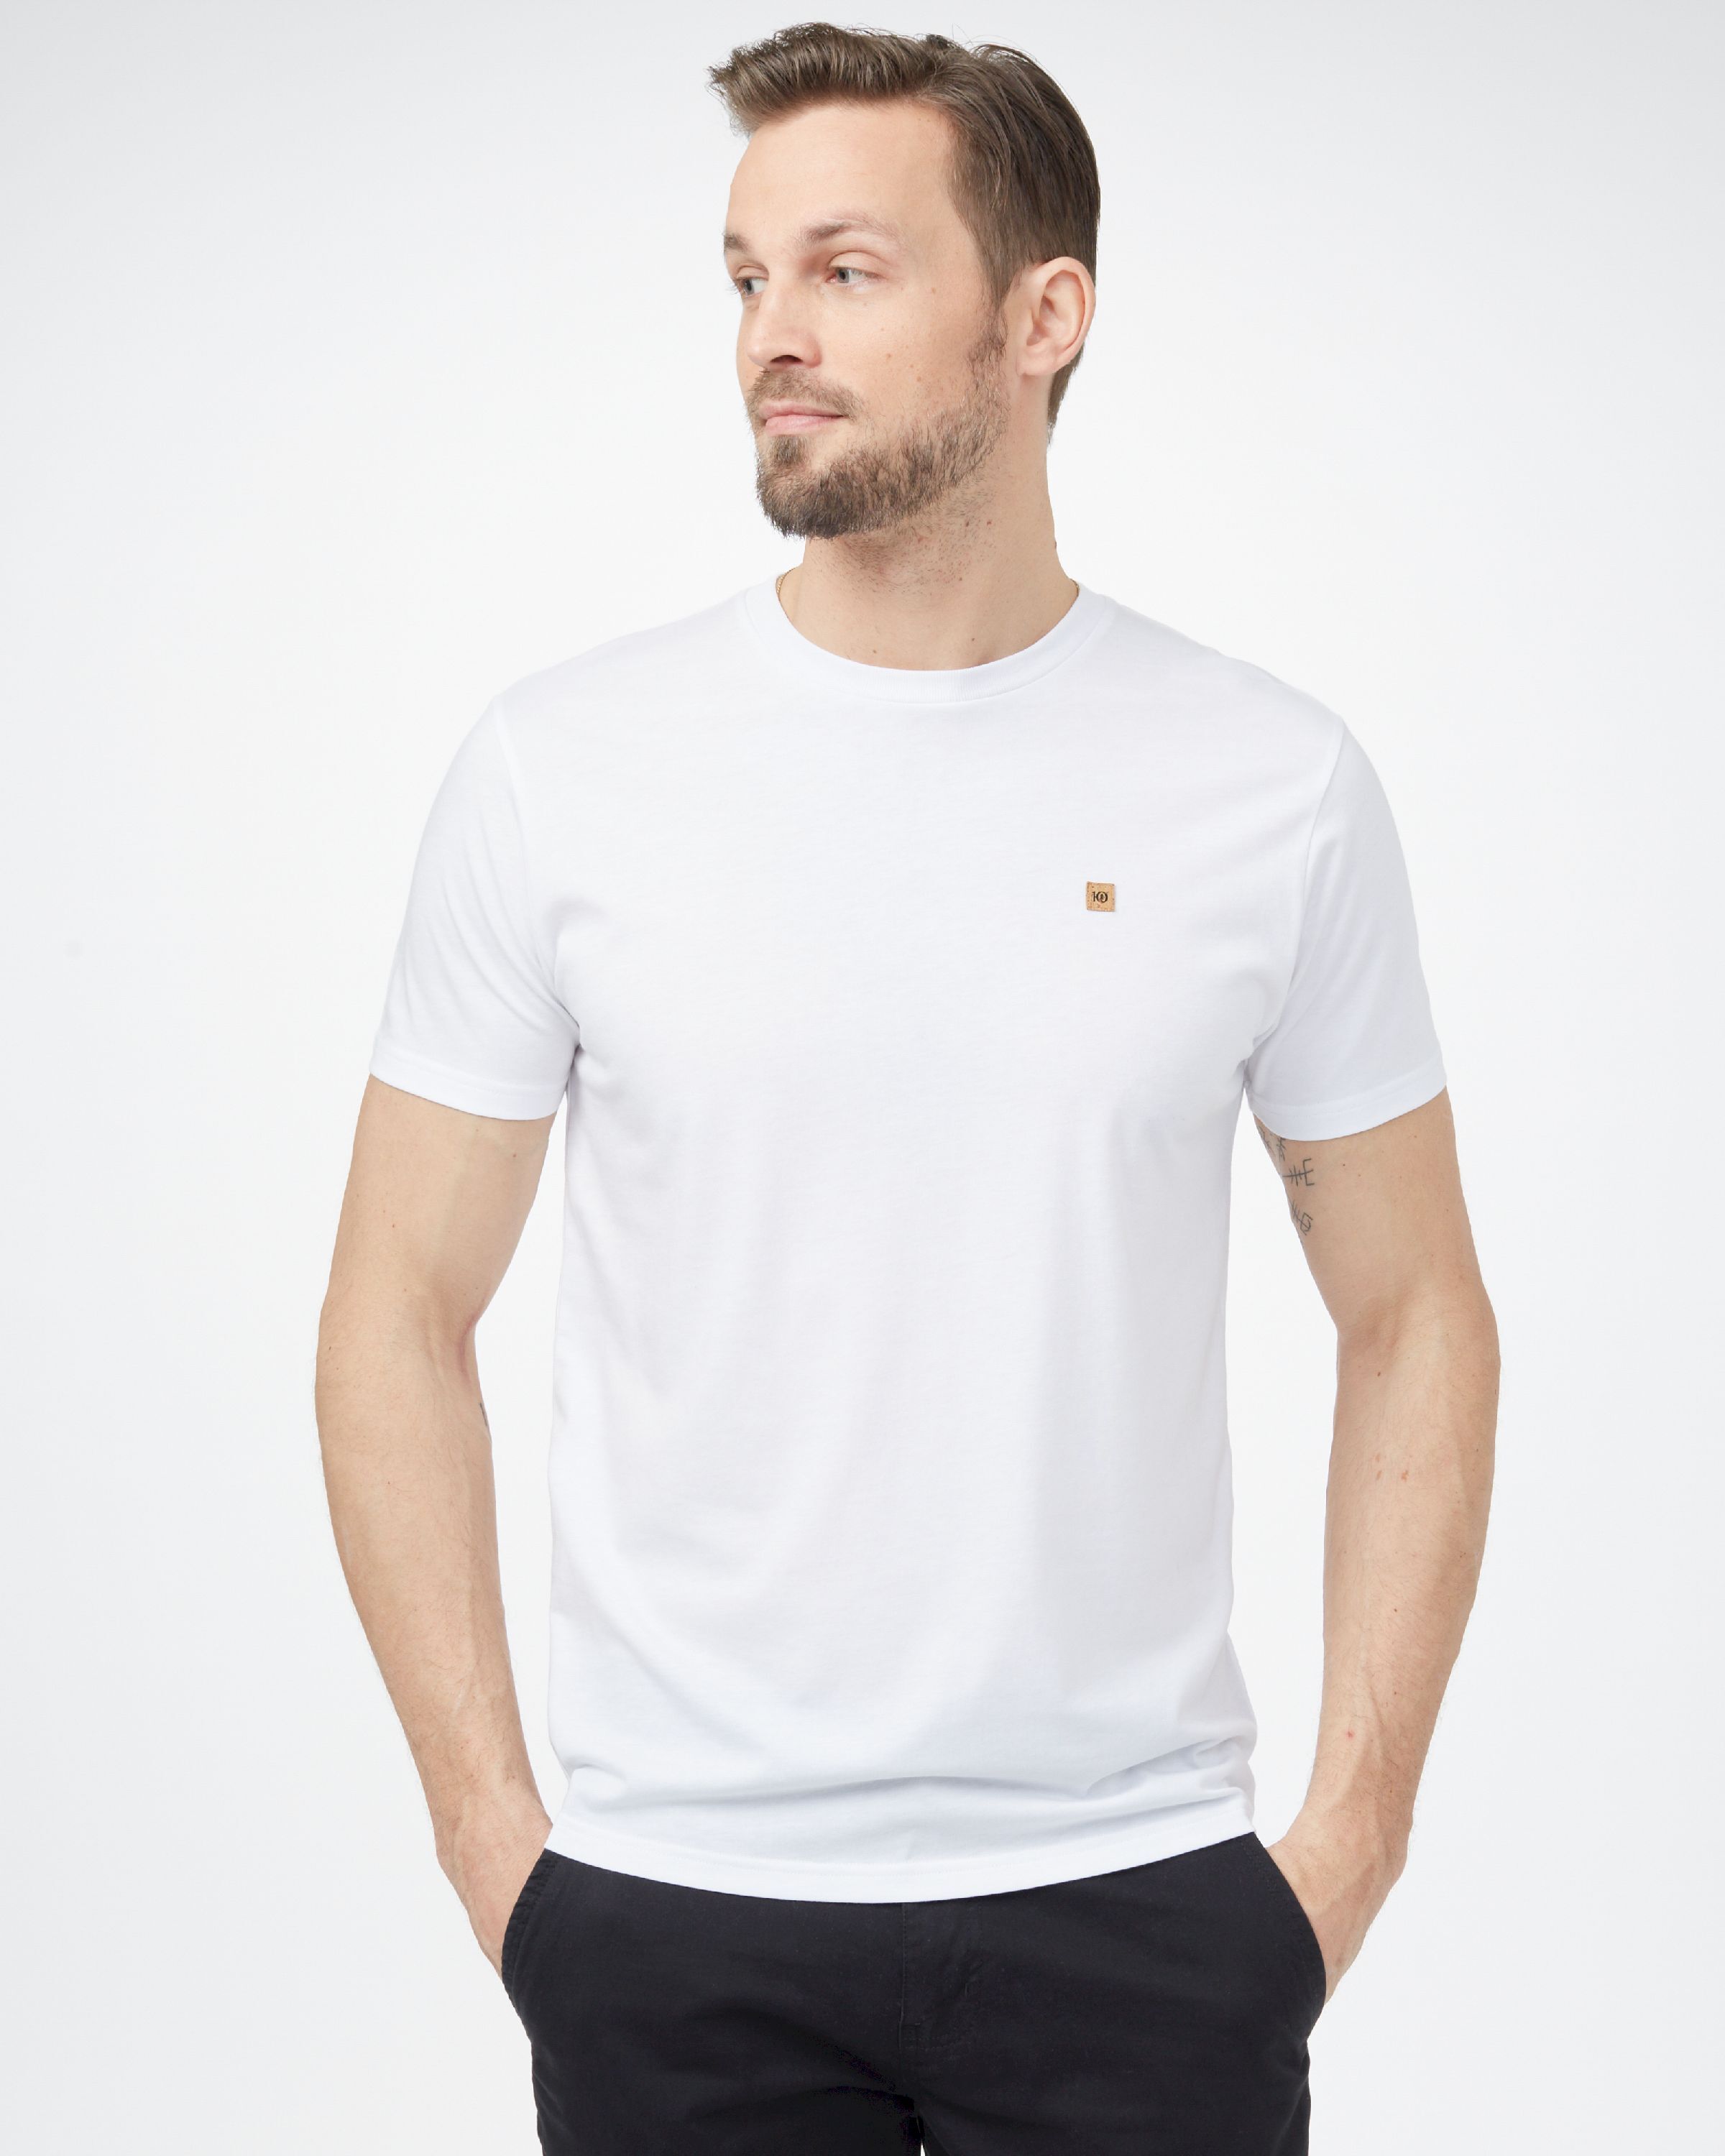 Tentree Classic T-Shirt - Hombre